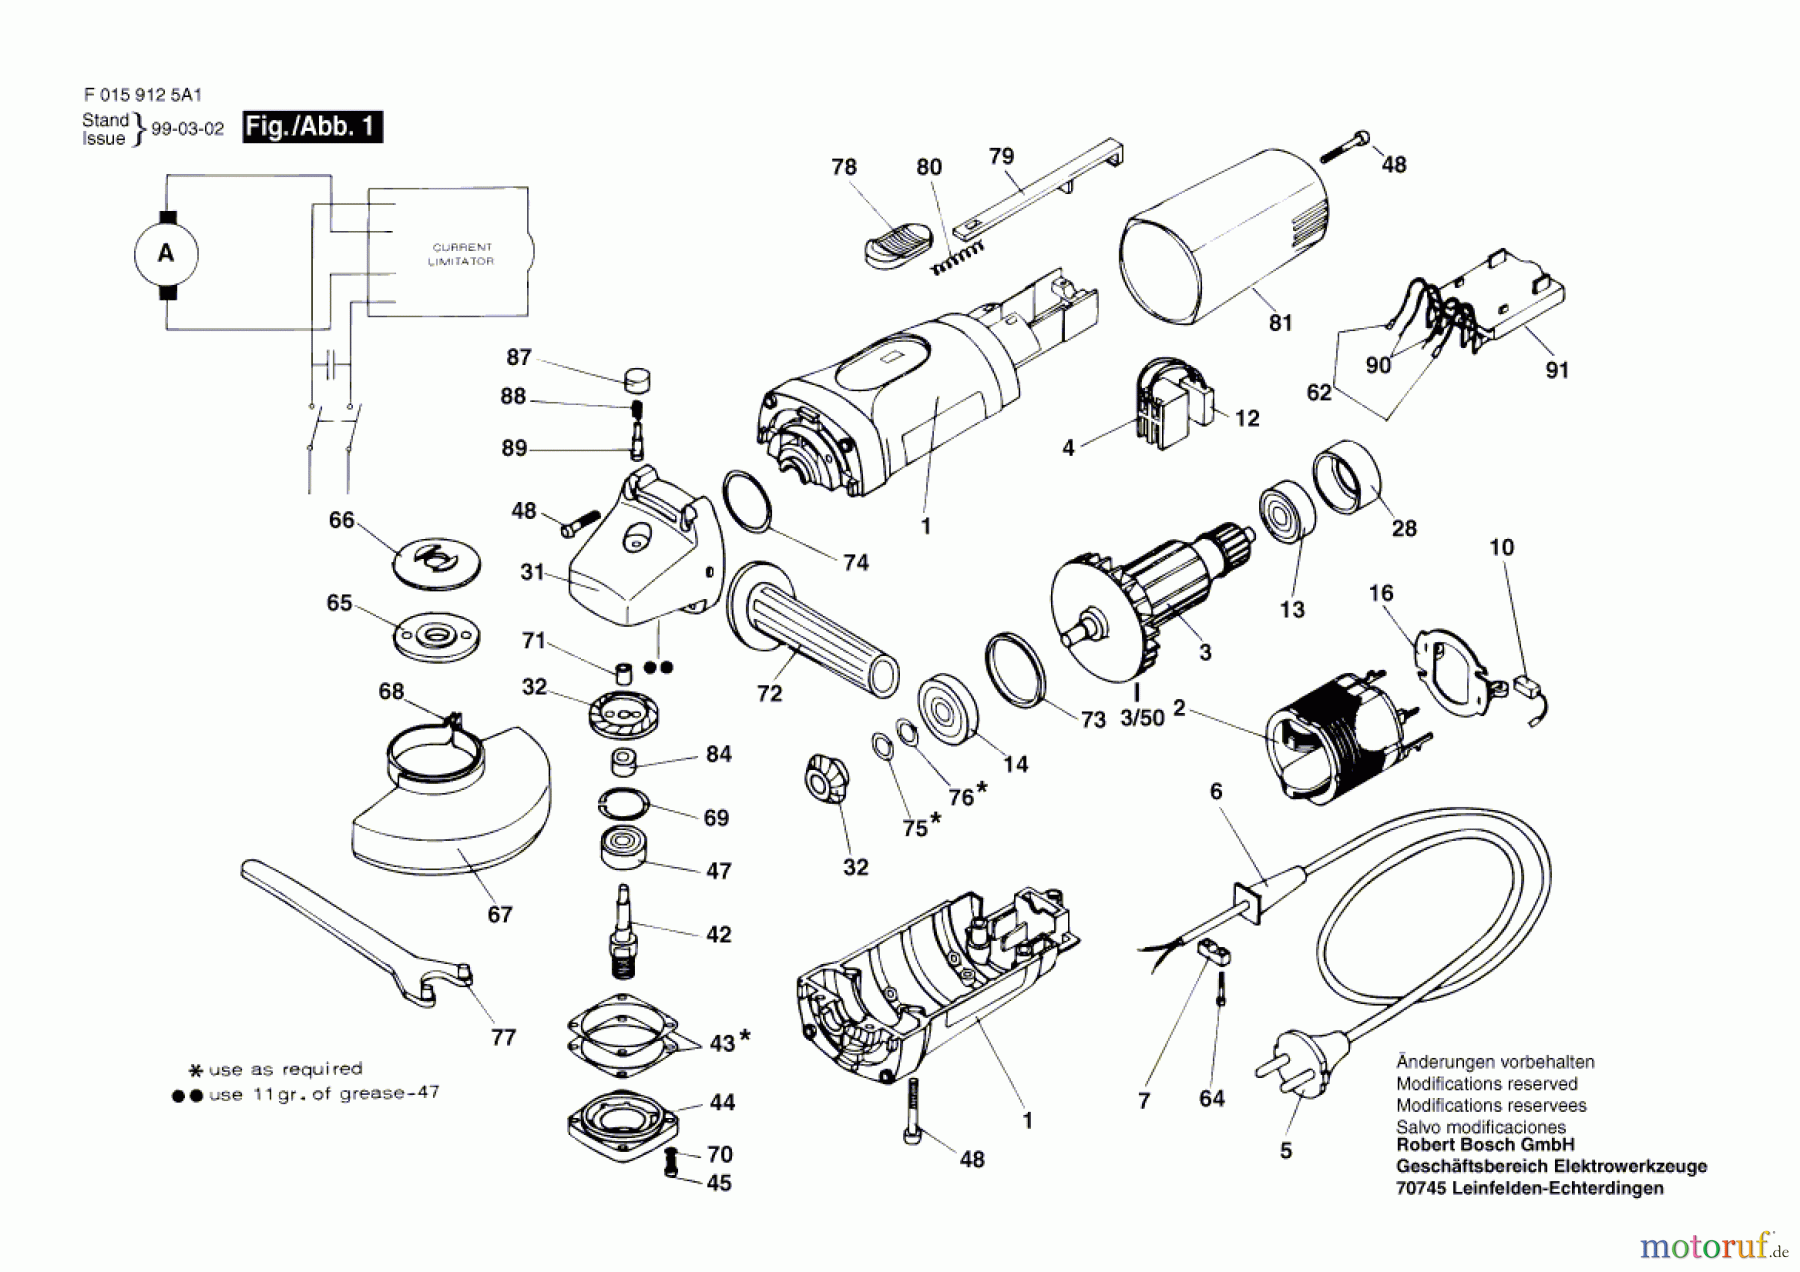  Bosch Werkzeug Hw-Winkelschleifer 9125 H1 Seite 1